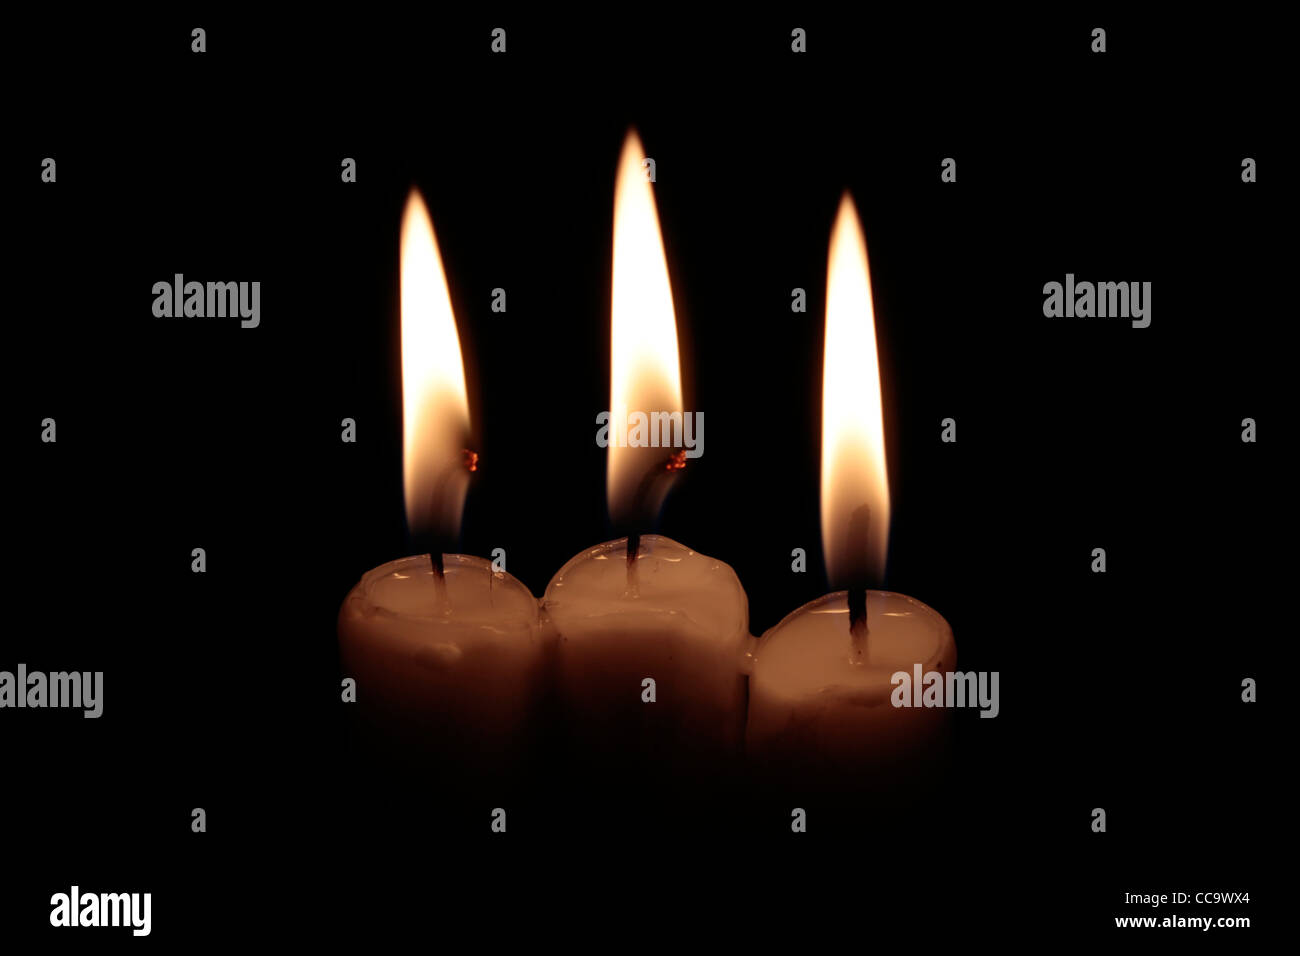 Tre candele accese, due di esse con lo stoppino incandescente, su sfondo nero, inquadratura orizzontale Foto Stock